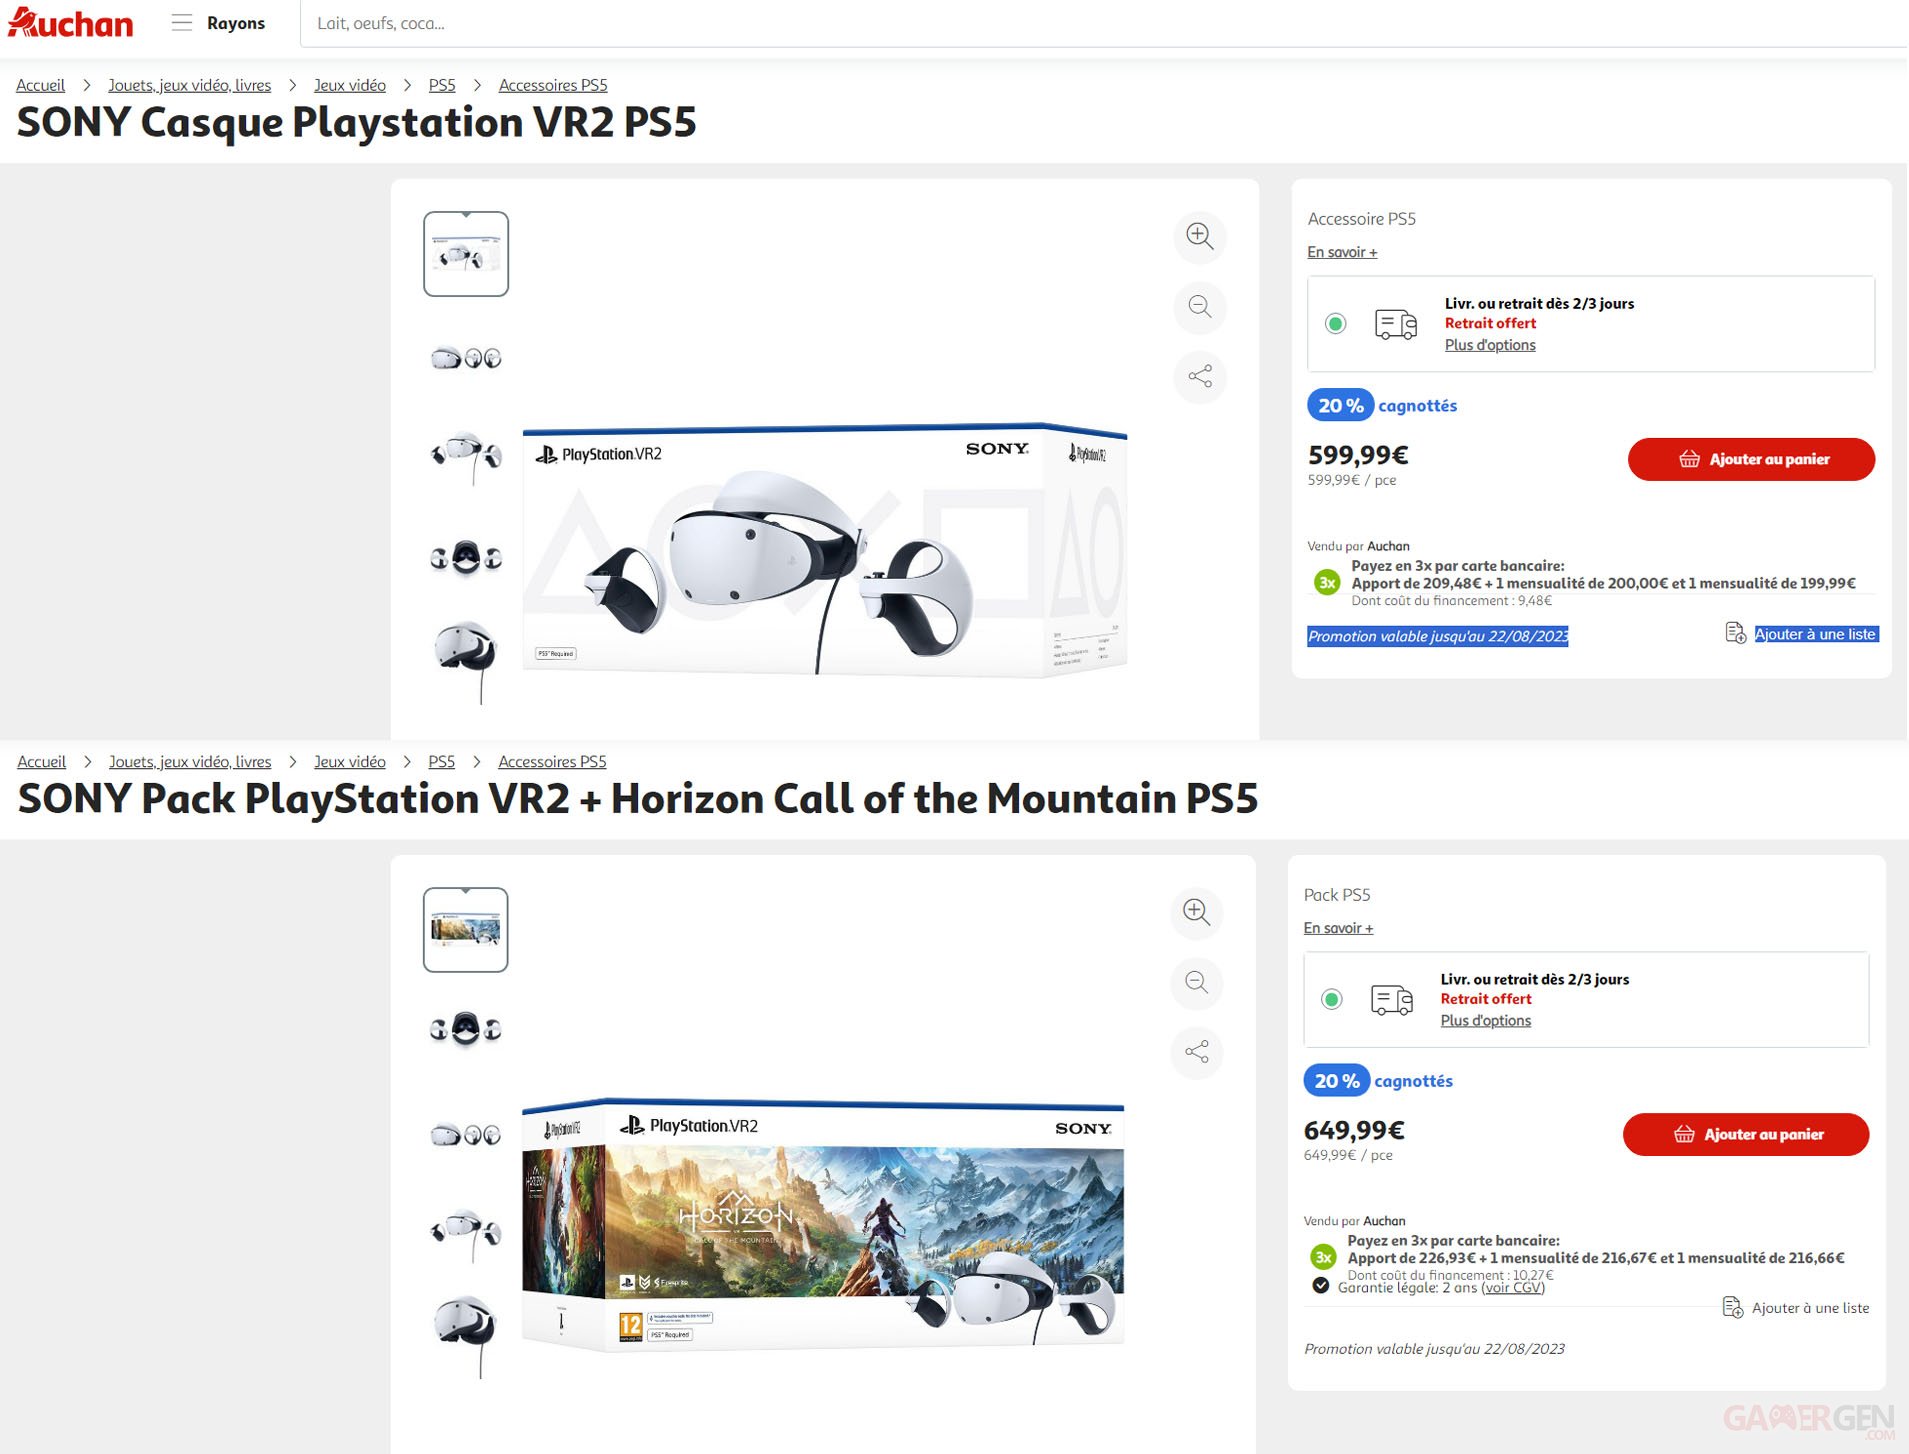 Oui, le nouveau casque PlayStation VR 2 est déjà en promotion sur